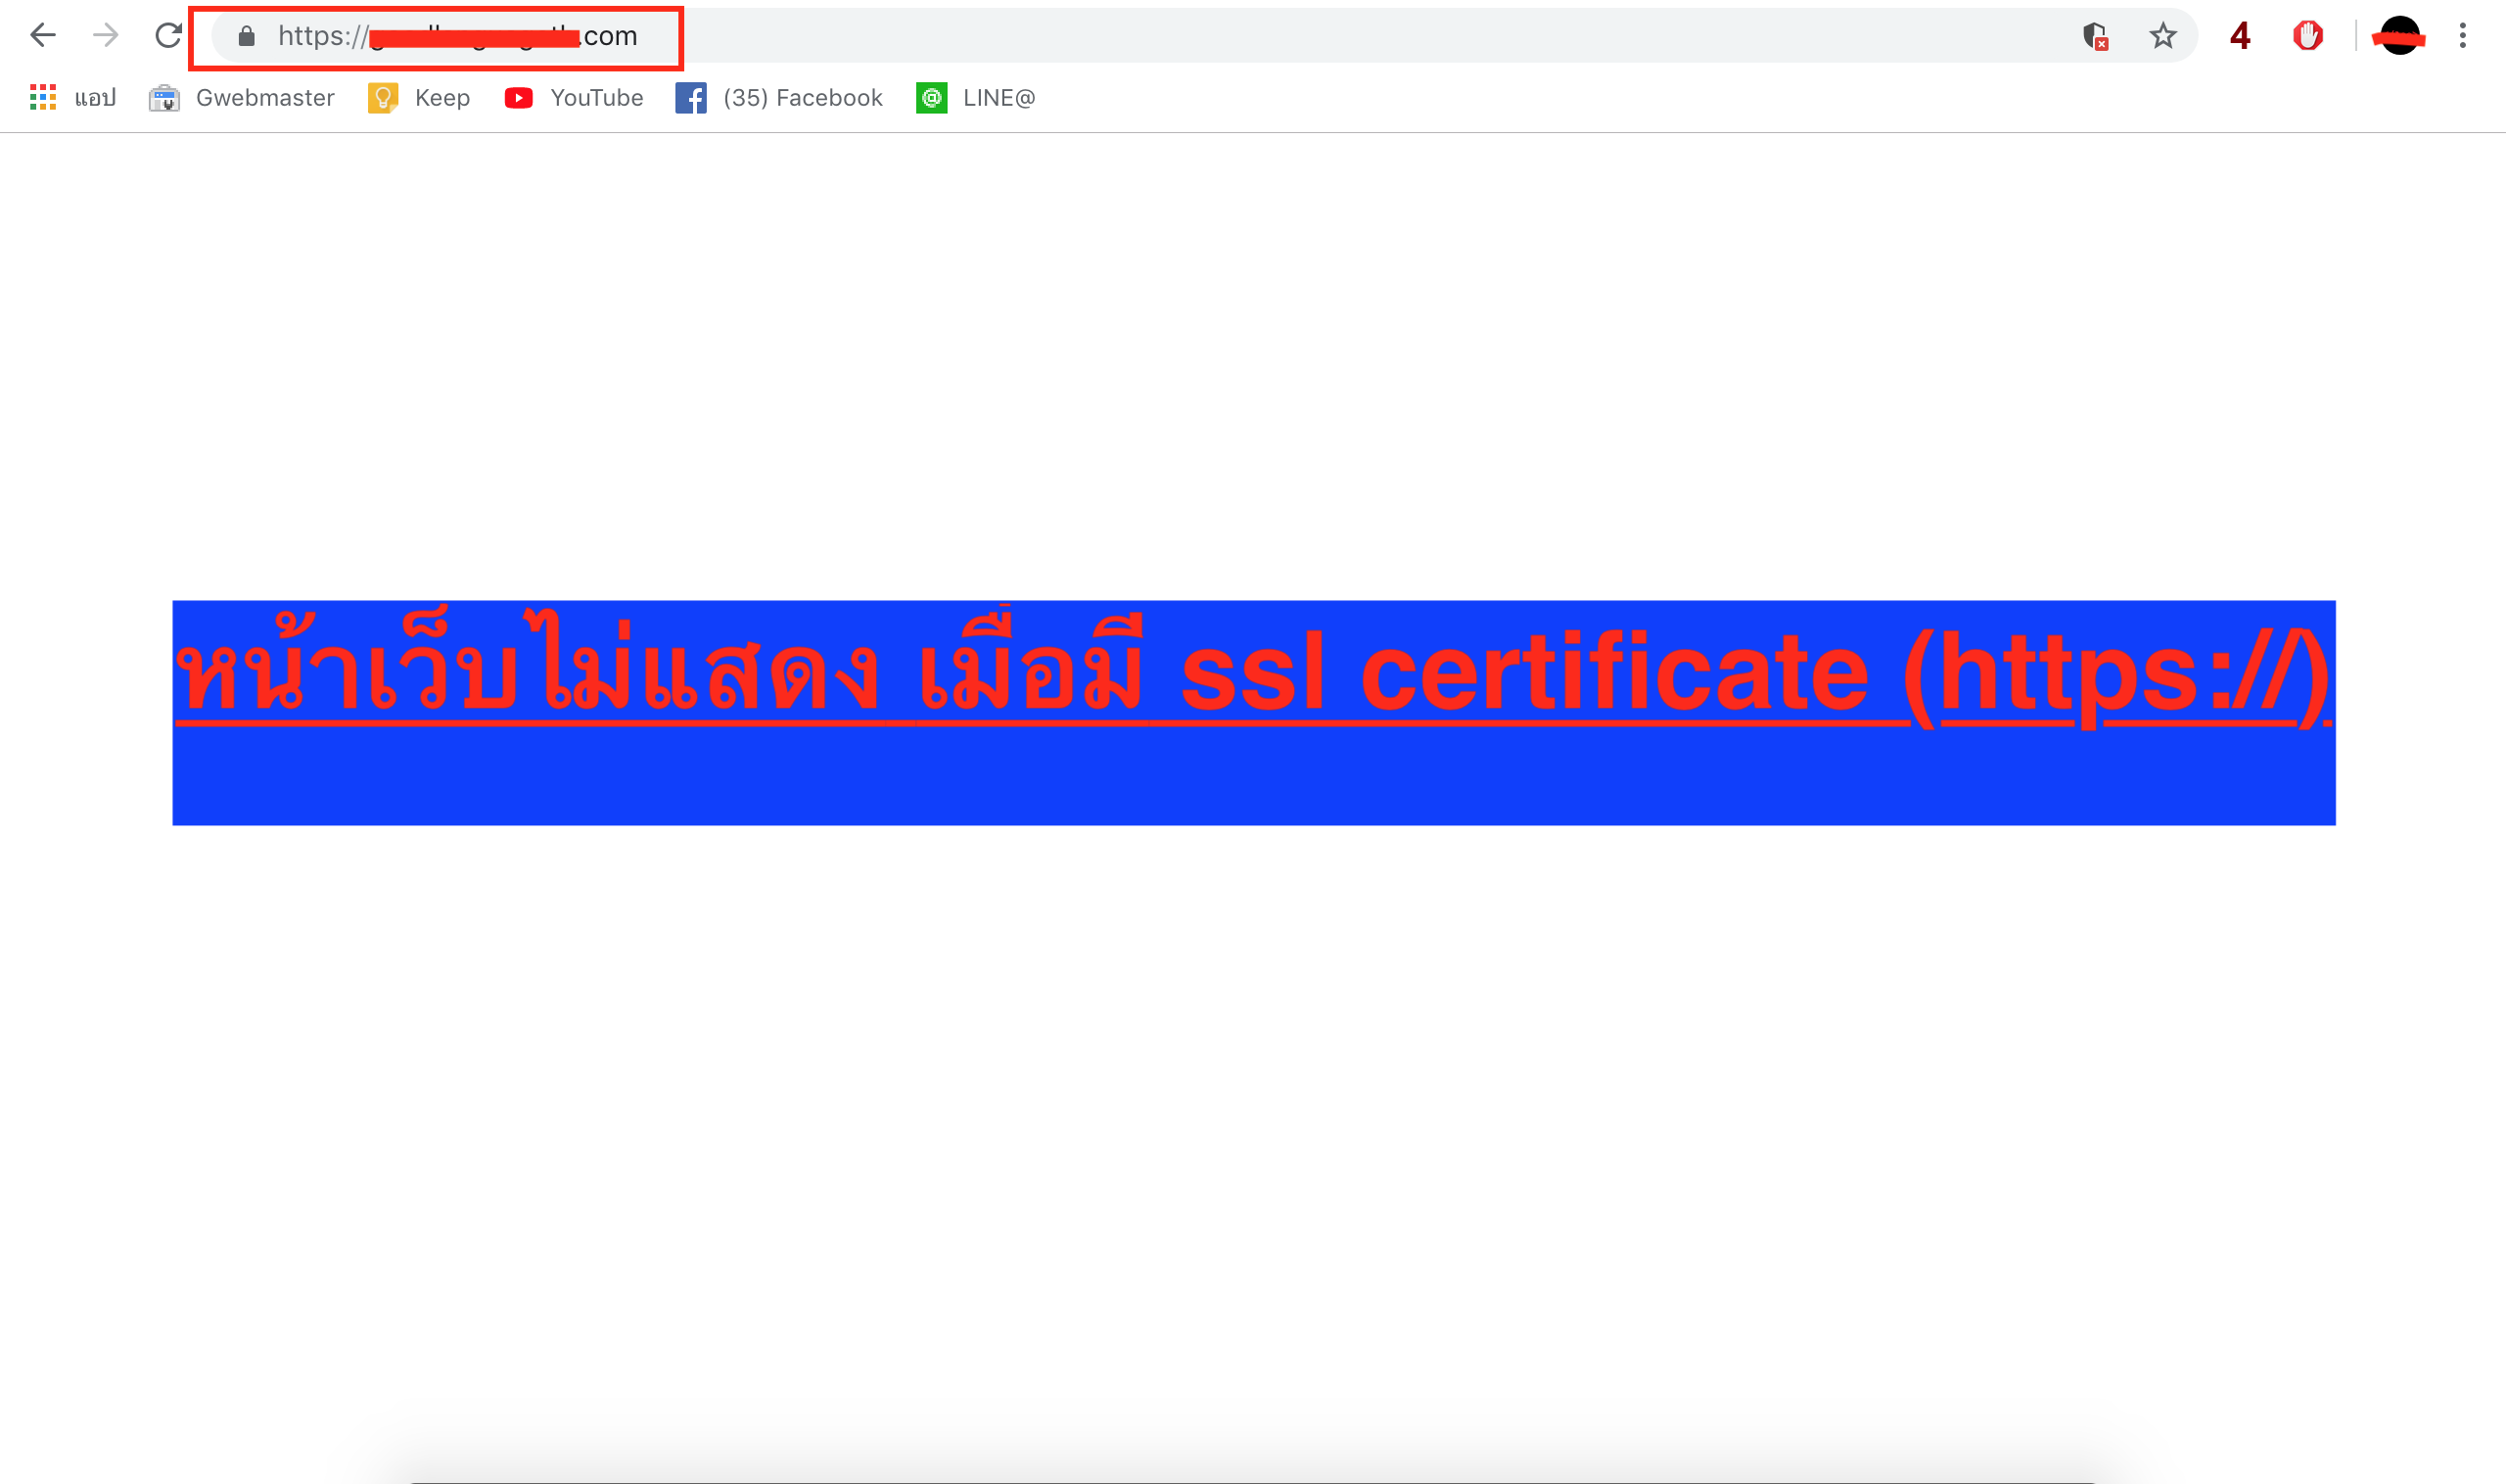 หน้าเว็บไม่แสดง เมื่อมี ssl ( https:// ) สาเหตุอันเนื่องมาจาก ssl ไม่ได้อนุญาติให้มีการนำเข้า ไฟล์ หรือวัตถุอื่นๆ เข้ามาในหน้าไฟล์เว็บไซต์ที่อยู่ในโดเมนที่มีการติดตั้ง ssl certificate และเว็บเบราเซอร์เองจึงได้ทำการบล็อกเว็บไซต์ของคุณไว้ โดยไม่แสดงหน้าหา มีเพียงหน้าเว็บสีขาว จึงจำเป็นต้องปลดบล็อก โดยมีขั้นตอนดังต่อไปนี้
 1. คลิกไปที่สัญลักษณ์ที่เป็นรูปโล่ ที่อยู่บนแถบ url ดังรูปที่แสดงด้านล่าง
2.คลิกที่คำว่า โหลดสคริปท์ที่ไม่ปลอดภัย 
3.คลิกที่ปุ่ม ที่มีคำว่า เสร็จสิ้น
หน้าเว็บไม่แสดง ,เมื่อมี ssl, ( https:// ), ,หน้าเว็บเป็นสีขาว,หน้าเว็บไม่ทำงาน,ssl ไม่ทำงาน,หน้าเว็บไม่ปลอดภัย,,,,,,,,, ssl ไม่ได้อนุญาติให้มีการนำเข้า ไฟล์ หรือวัตถุอื่นๆ เข้ามาใน,หน้าไฟล์เว็บไซต์,ที่อยู่ในโดเมนที่มีการติดตั้ง, ssl certificate, 
แล้วเพราะอะไร หน้าเว็บถึงไม่แสดงแสดงเลยล่ะ ?
สาเหตุที่หน้าเว็บไม่แสดง นั่นก็เพราะว่า เว็บไซต์ของคุณไปดึงวัตถุ ประเภทการติดแท็ก iframe , ดึง include ไฟล์รูปภาพ หรือไฟล์อื่นๆ เข้ามาในหน้าเว็บ หรือมีการส่งค่าออกจากหน้าเว็บของคุณ ทำให้เงื่อนไงของ ssl ไม่ไว้ใจเว็บไซต์ และเว็บไซต์จึงถูกปฏิเสธ และถูกแจ้งเตือนว่าไม่ปลอดภัย 
วิธีแก้ไข 
1. จากที่คุณใช้ protocol เดิมคือ http (ตัวอย่าง : http://bestinternet.co.th/v1/img/preview.jpg ) ให้เปลี่ยนมาใช้ protocol https (ตัวอย่าง : https://bestinternet.co.th/v1/img/preview.jpg ) 
2. หากมีไฟล์วัตถุที่อยู่บนเว็บไซต์ของคุณอยู่แล้ว ให้คุณดึงไฟล์เข้ามาโดยไม่ต้องผ่านโดเมน ก็คือการดึงไฟล์ตรงๆนั่นเอง (ไม่ต้องดึงผ่านชื่อเว็บ) เช่น /img/preview.jpg